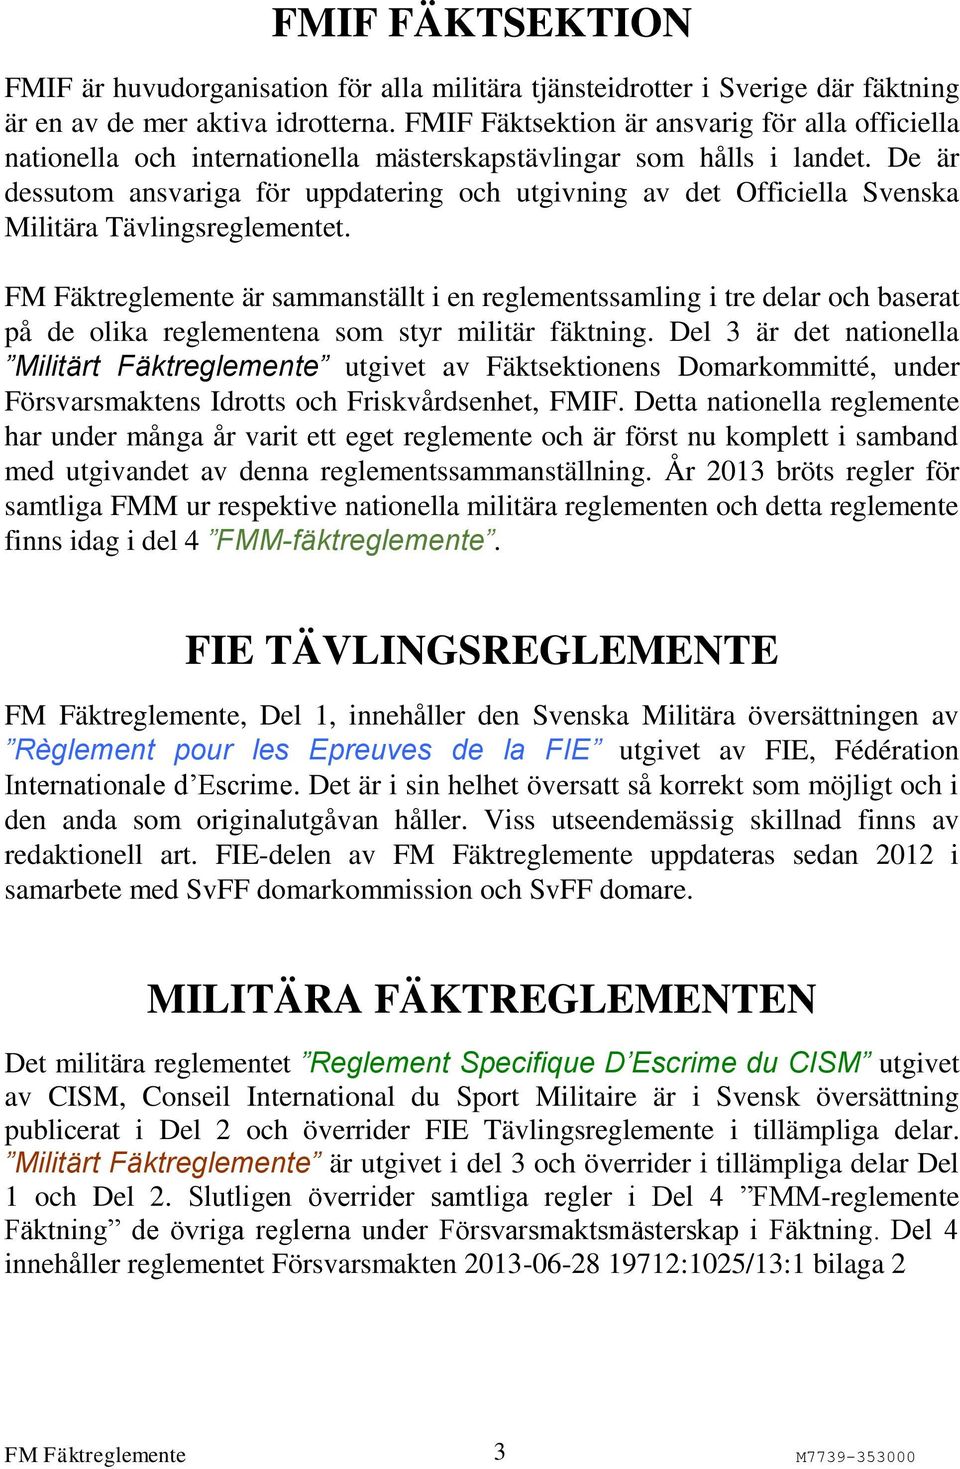 De är dessutom ansvariga för uppdatering och utgivning av det Officiella Svenska Militära Tävlingsreglementet.